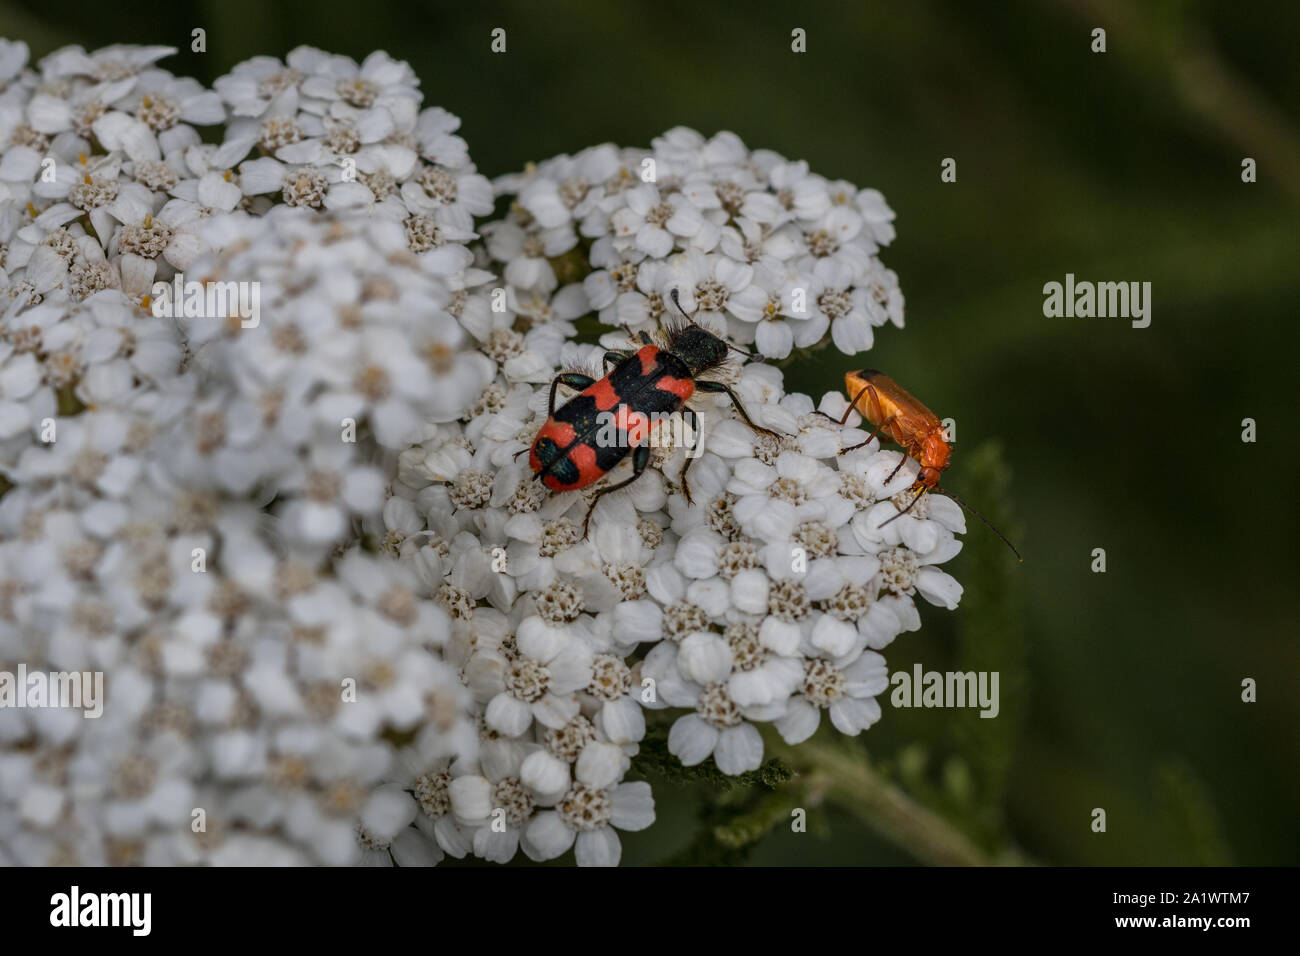 La visión del mundo de Escarabajos diminutos en una flor blanca Foto de stock